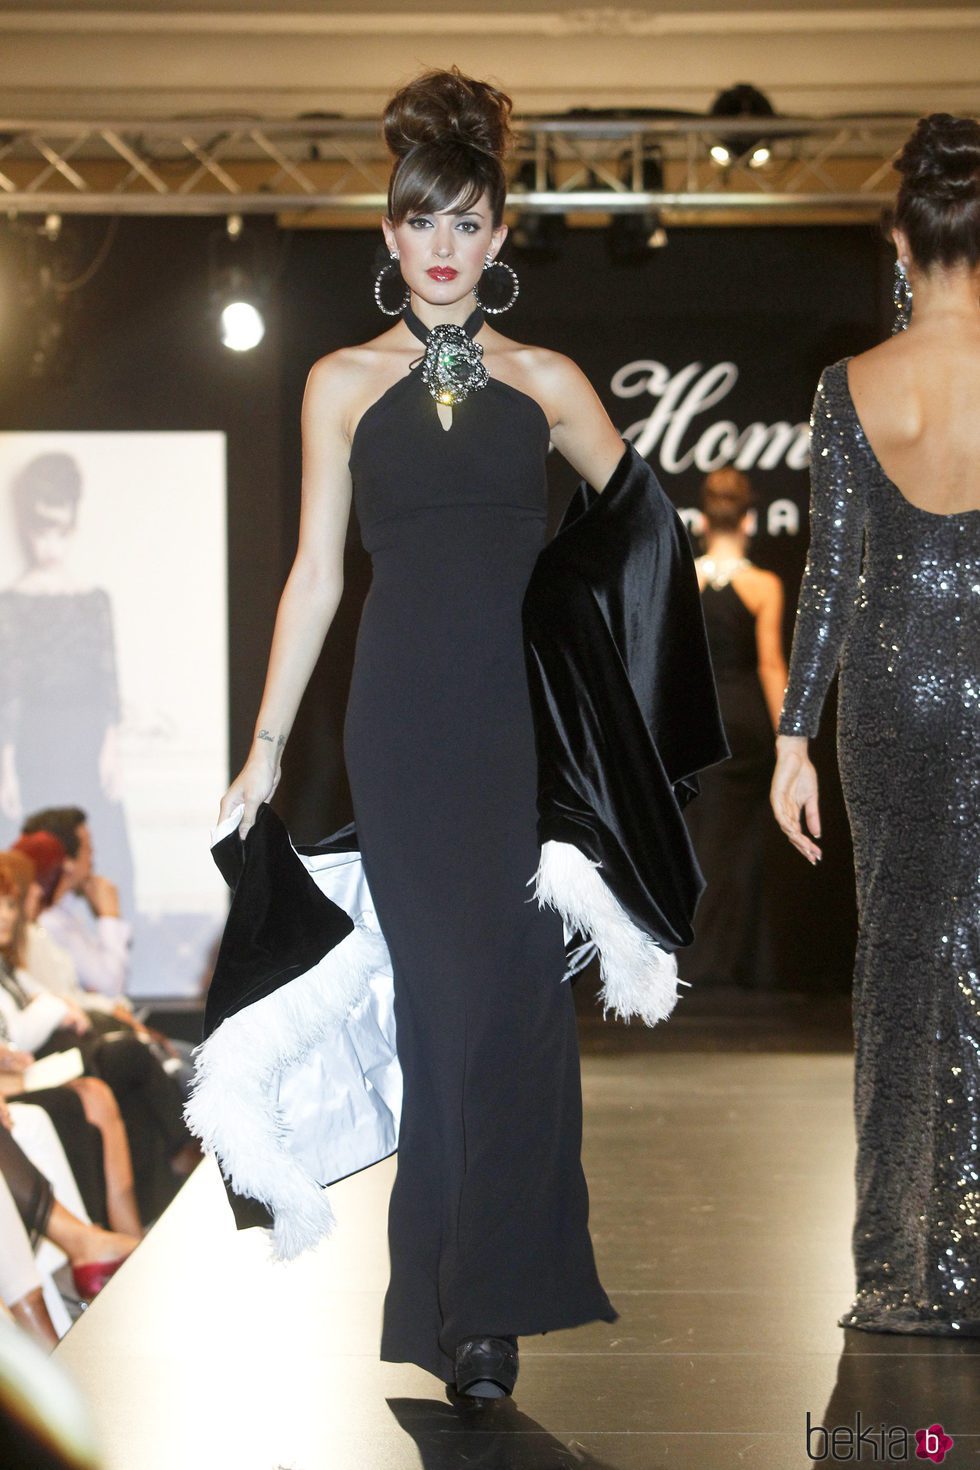 Noelia López desfila con un vestido negro de la nueva colección de la firma Tot-Hom